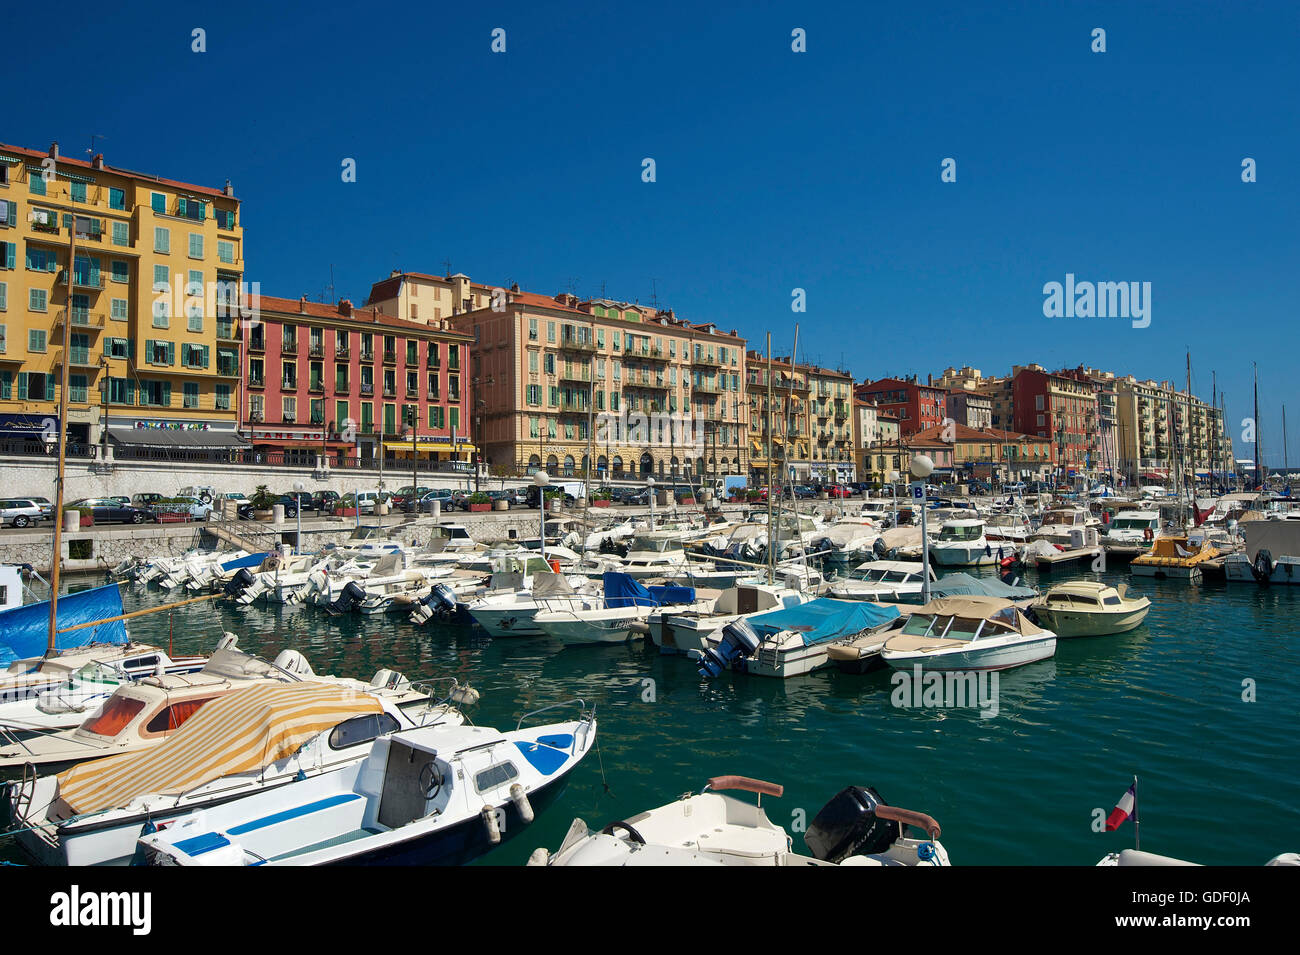 Port Lympia, Quartier du Port, Old Town, Nice, Cote d?Azur, France Stock Photo